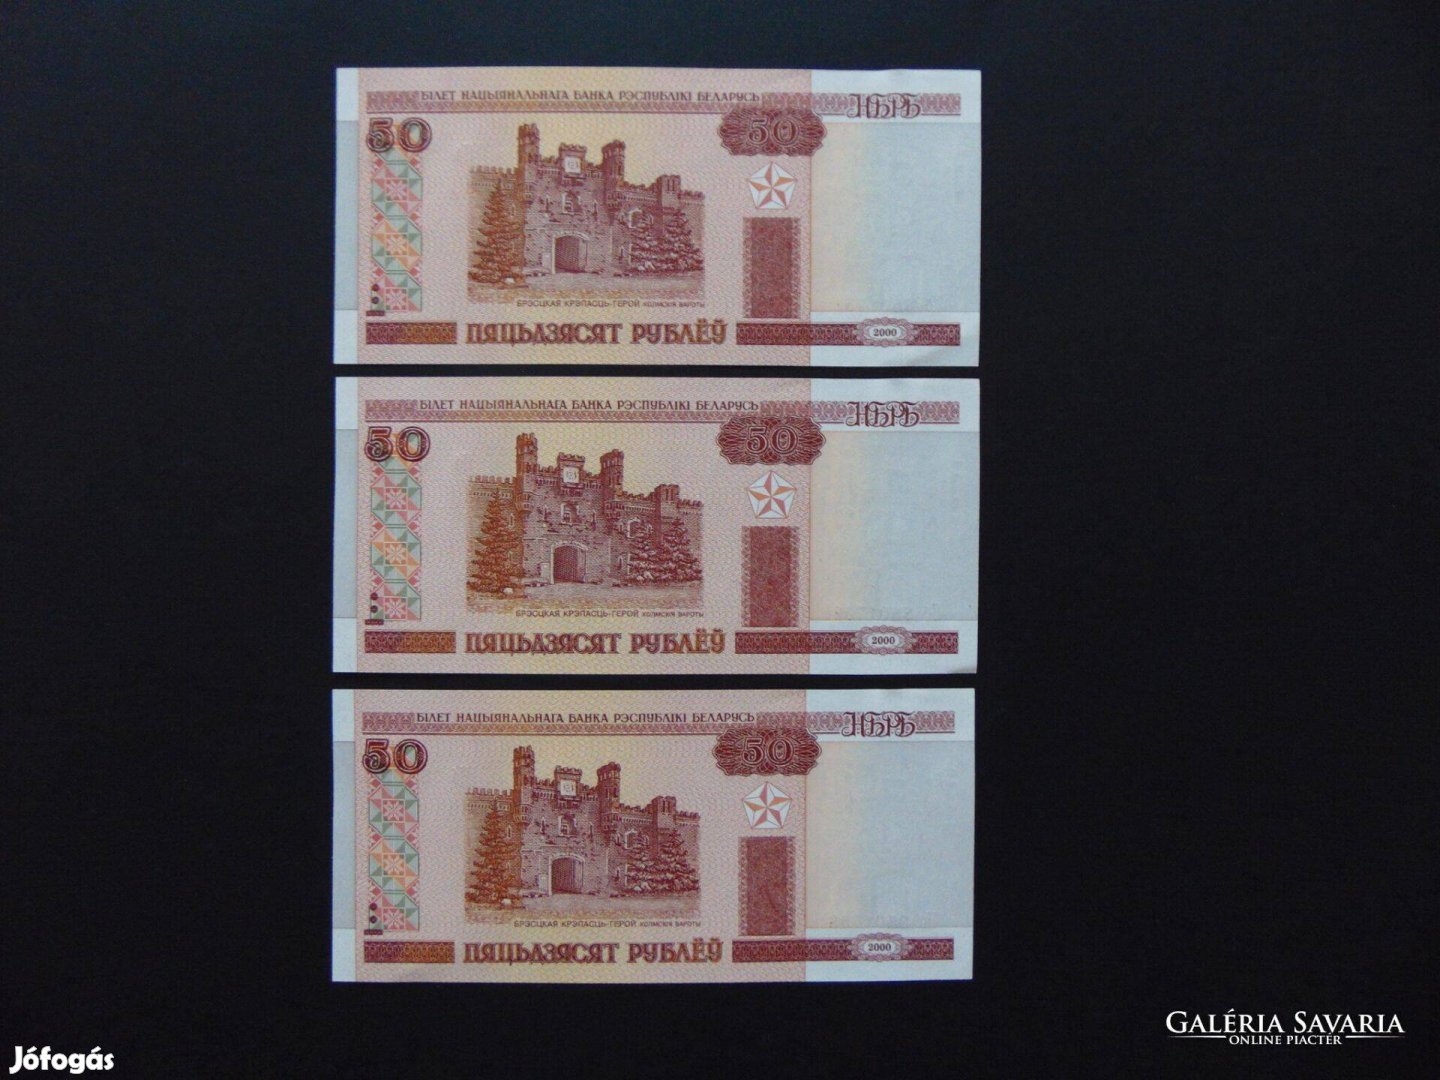 Fehéroroszország 3 darab 50 rubel sorszámkövető - hajtatlan bankjegyek